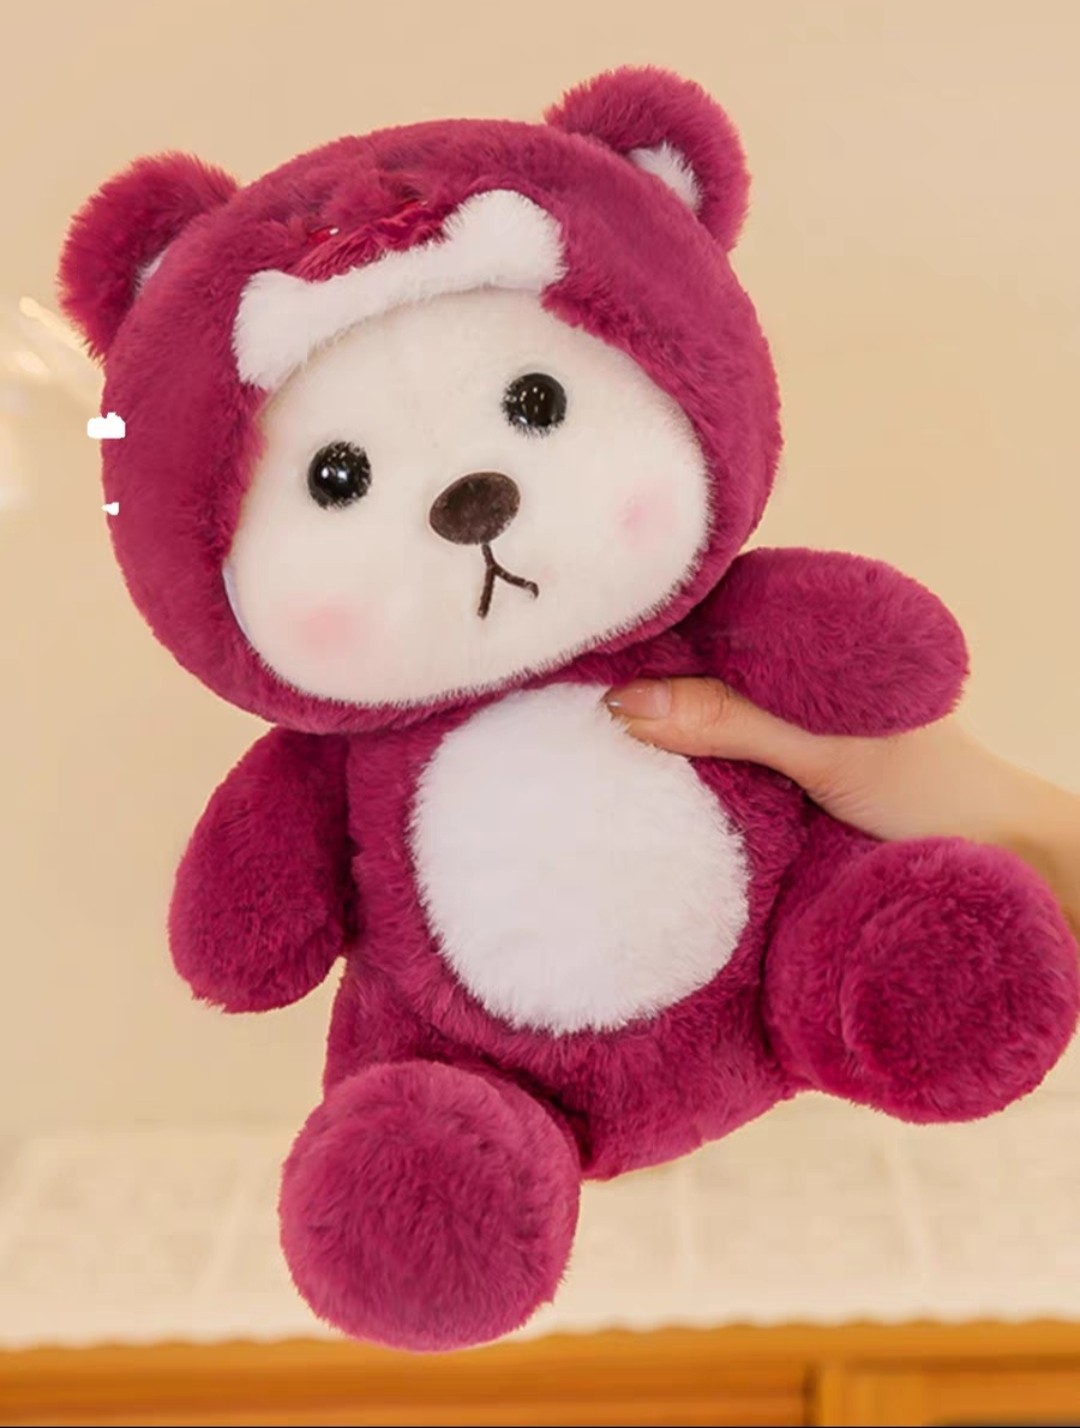 Gấu bông lena ngồi đội mũ gấu dâu đỏ đáng yêu, gấu teddy trắng cosplay